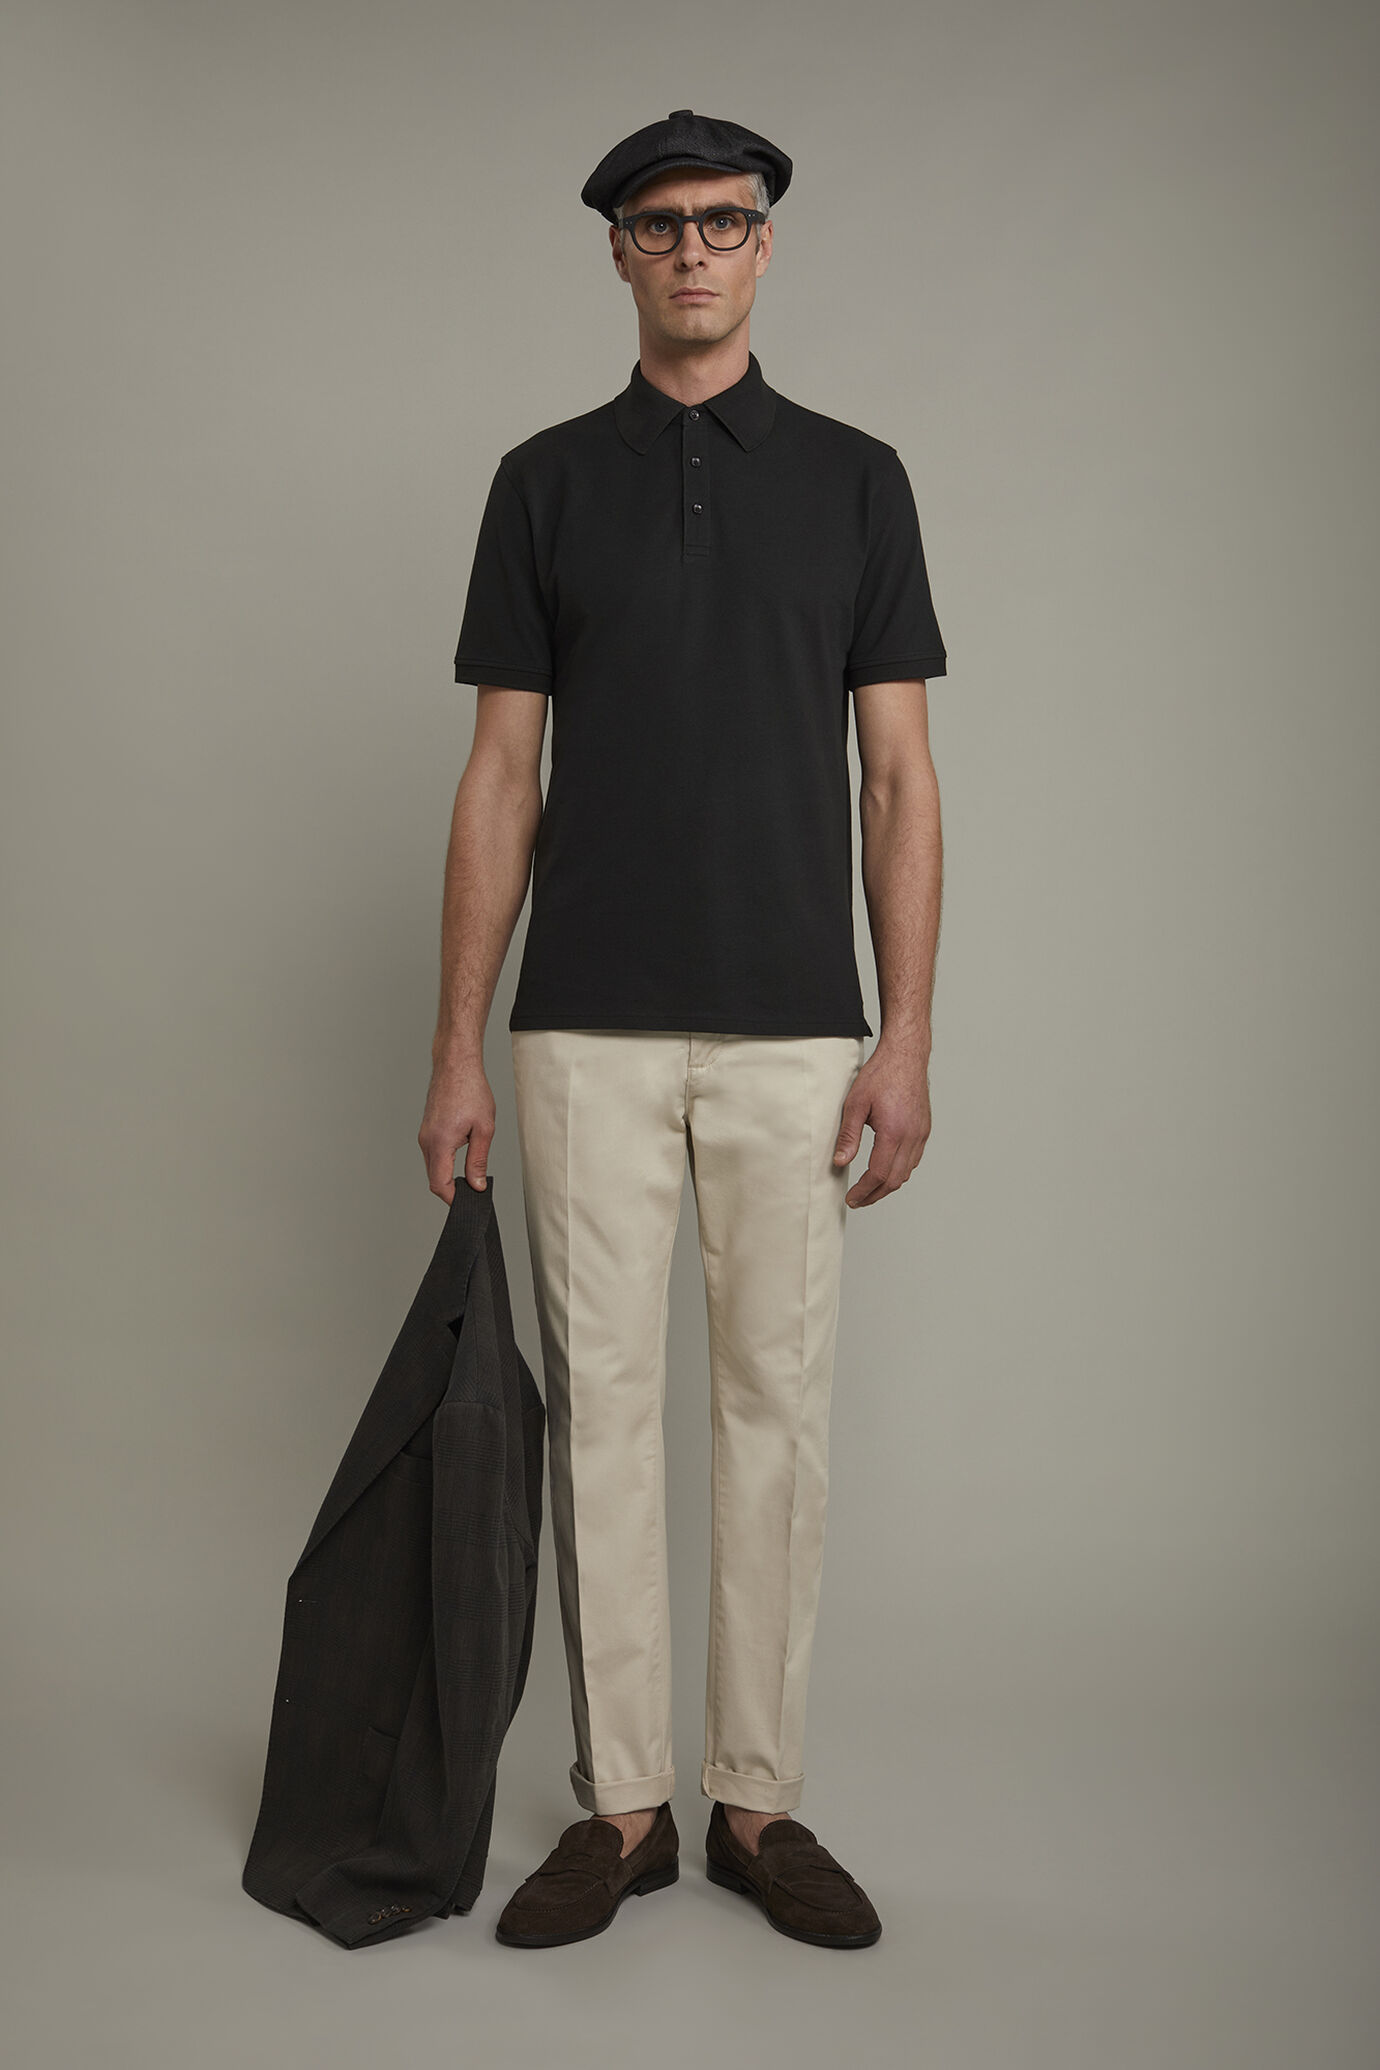 Men’s short sleeve polo shirt 100% piquet cotton regular fit